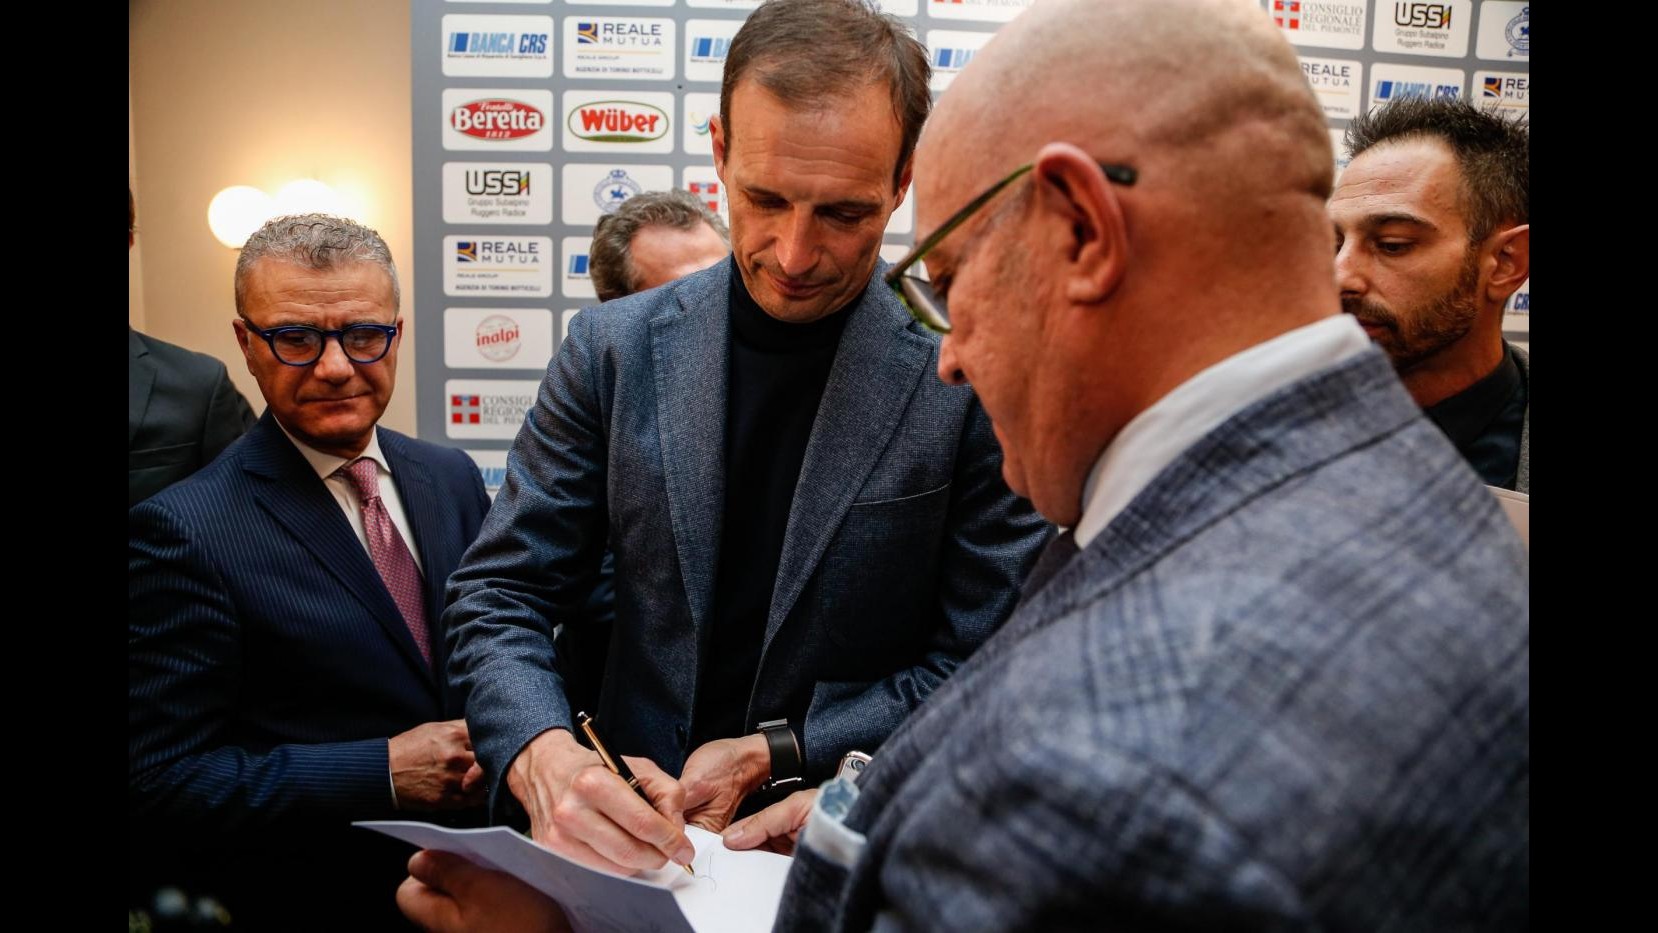 FOTO Juventus, Allegri vince premio Ussi come miglior allenatore